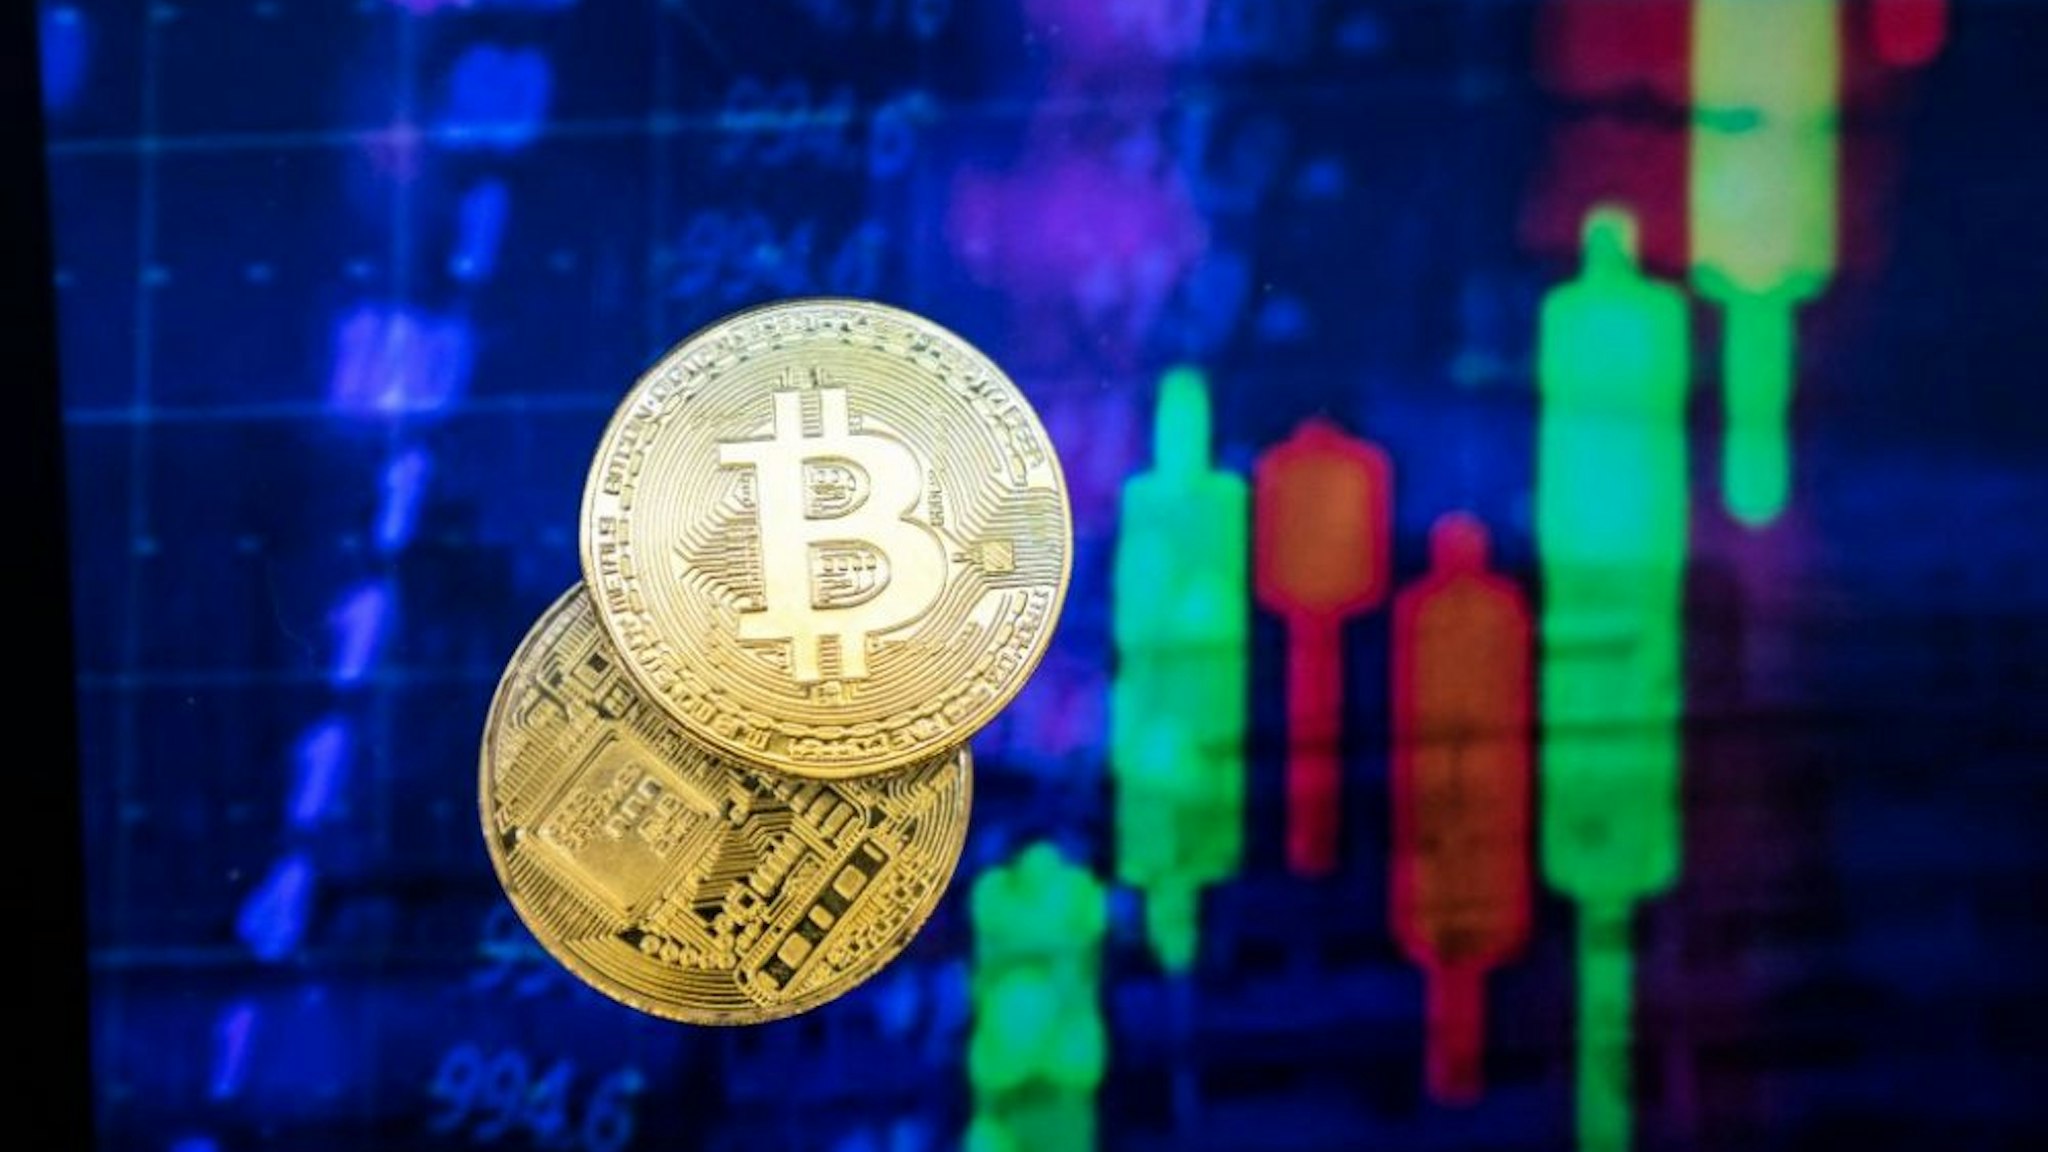 HONG KONG, HONG KONG - NOVEMBER 30: A visual representation of the digital Cryptocurrency, Bitcoin experienced price falls $1,000 in Minutes to drop below $10k on November 30, 2017 in Hong Kong, Hong Kong.